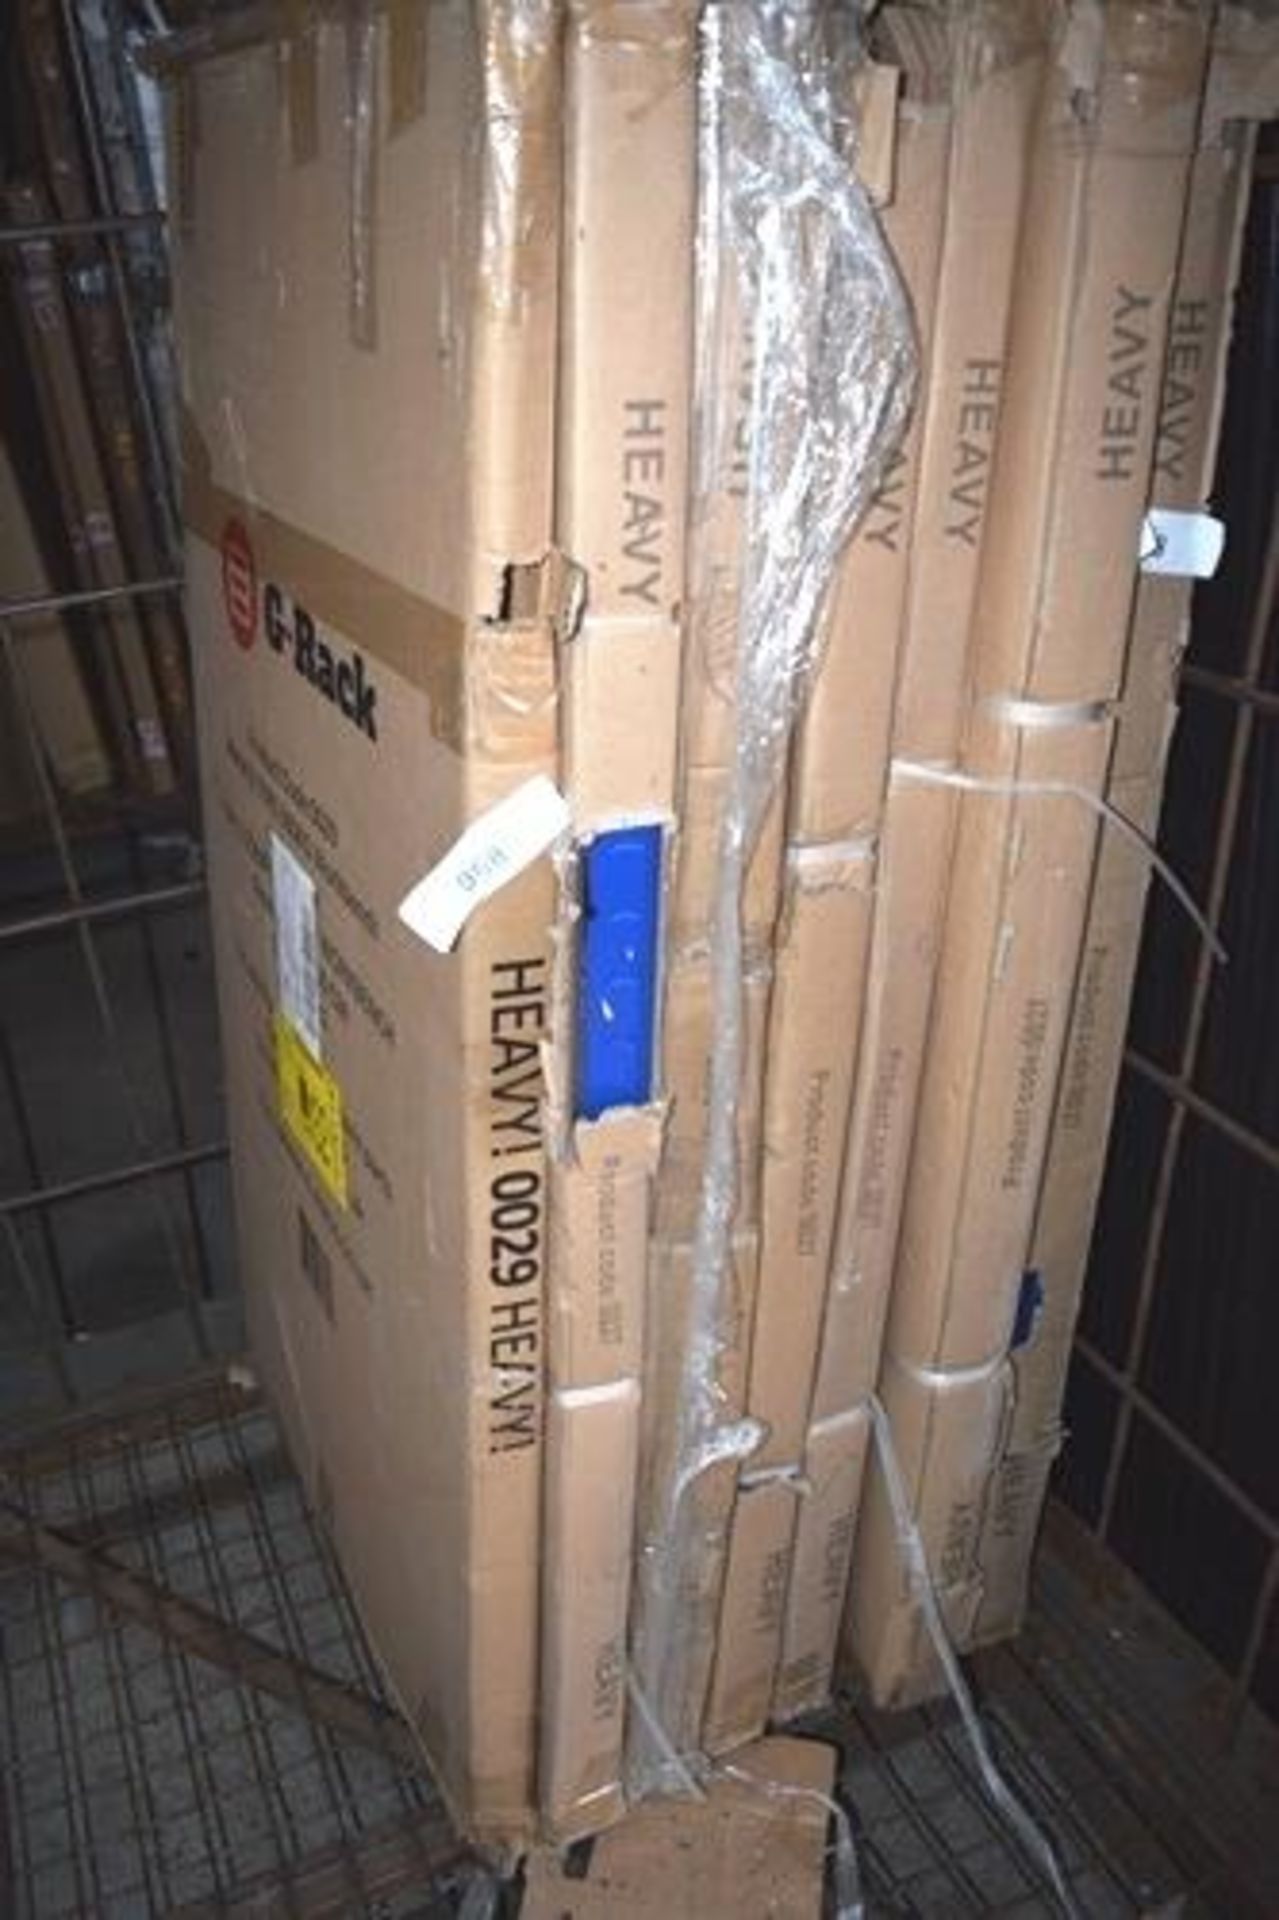 6 x 5 tier 175kg blue shelf racks together with 1 x G-Rack 2 tier 300kg shelf rack - New in box, box